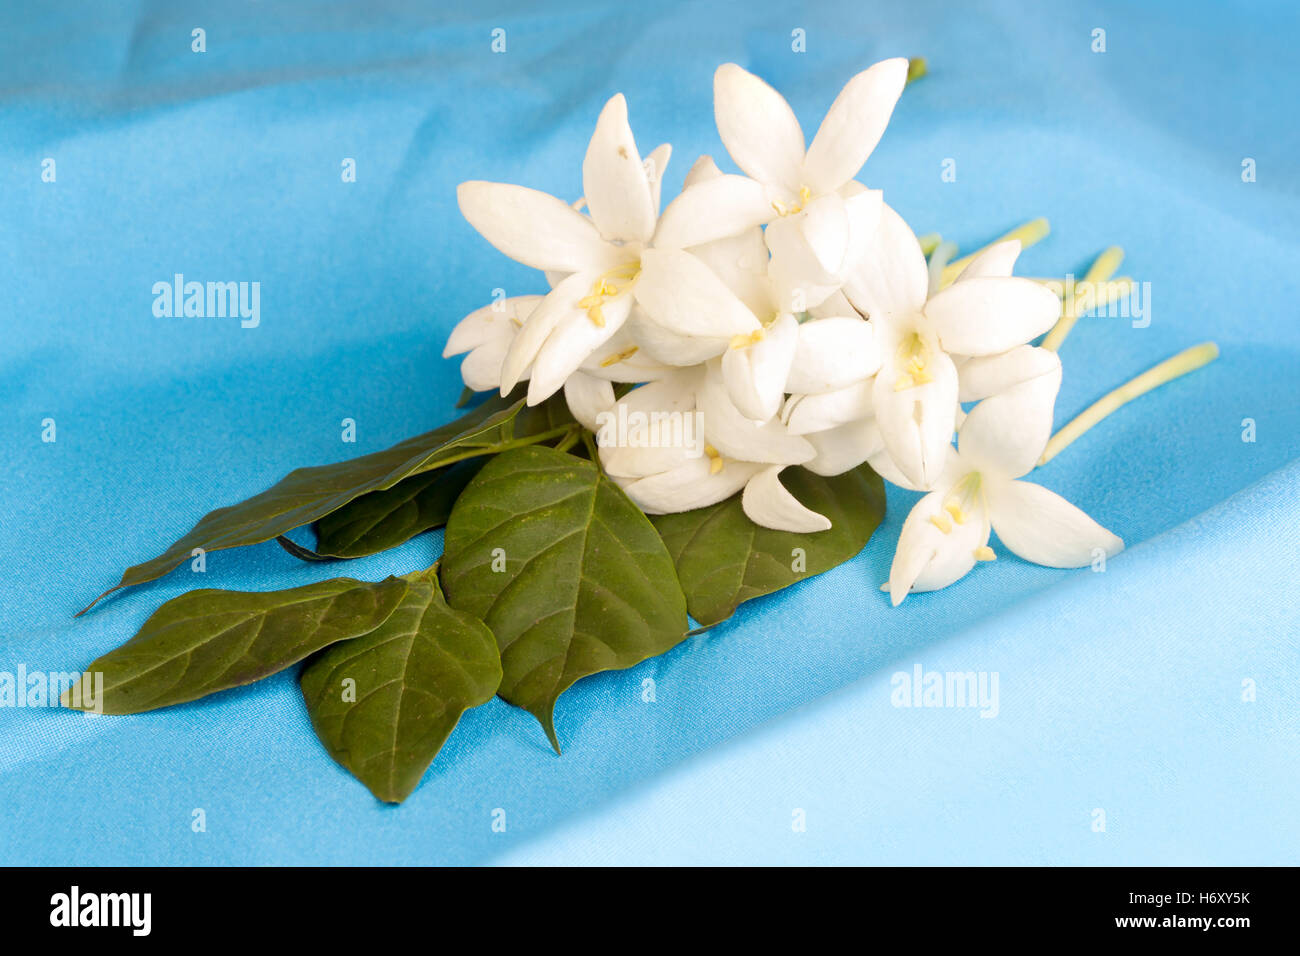 Millingtonia fiori sul tessuto blu. simbolo di assistenza infermieristica tailandia tailandese e la medicina tradizionale. Foto Stock